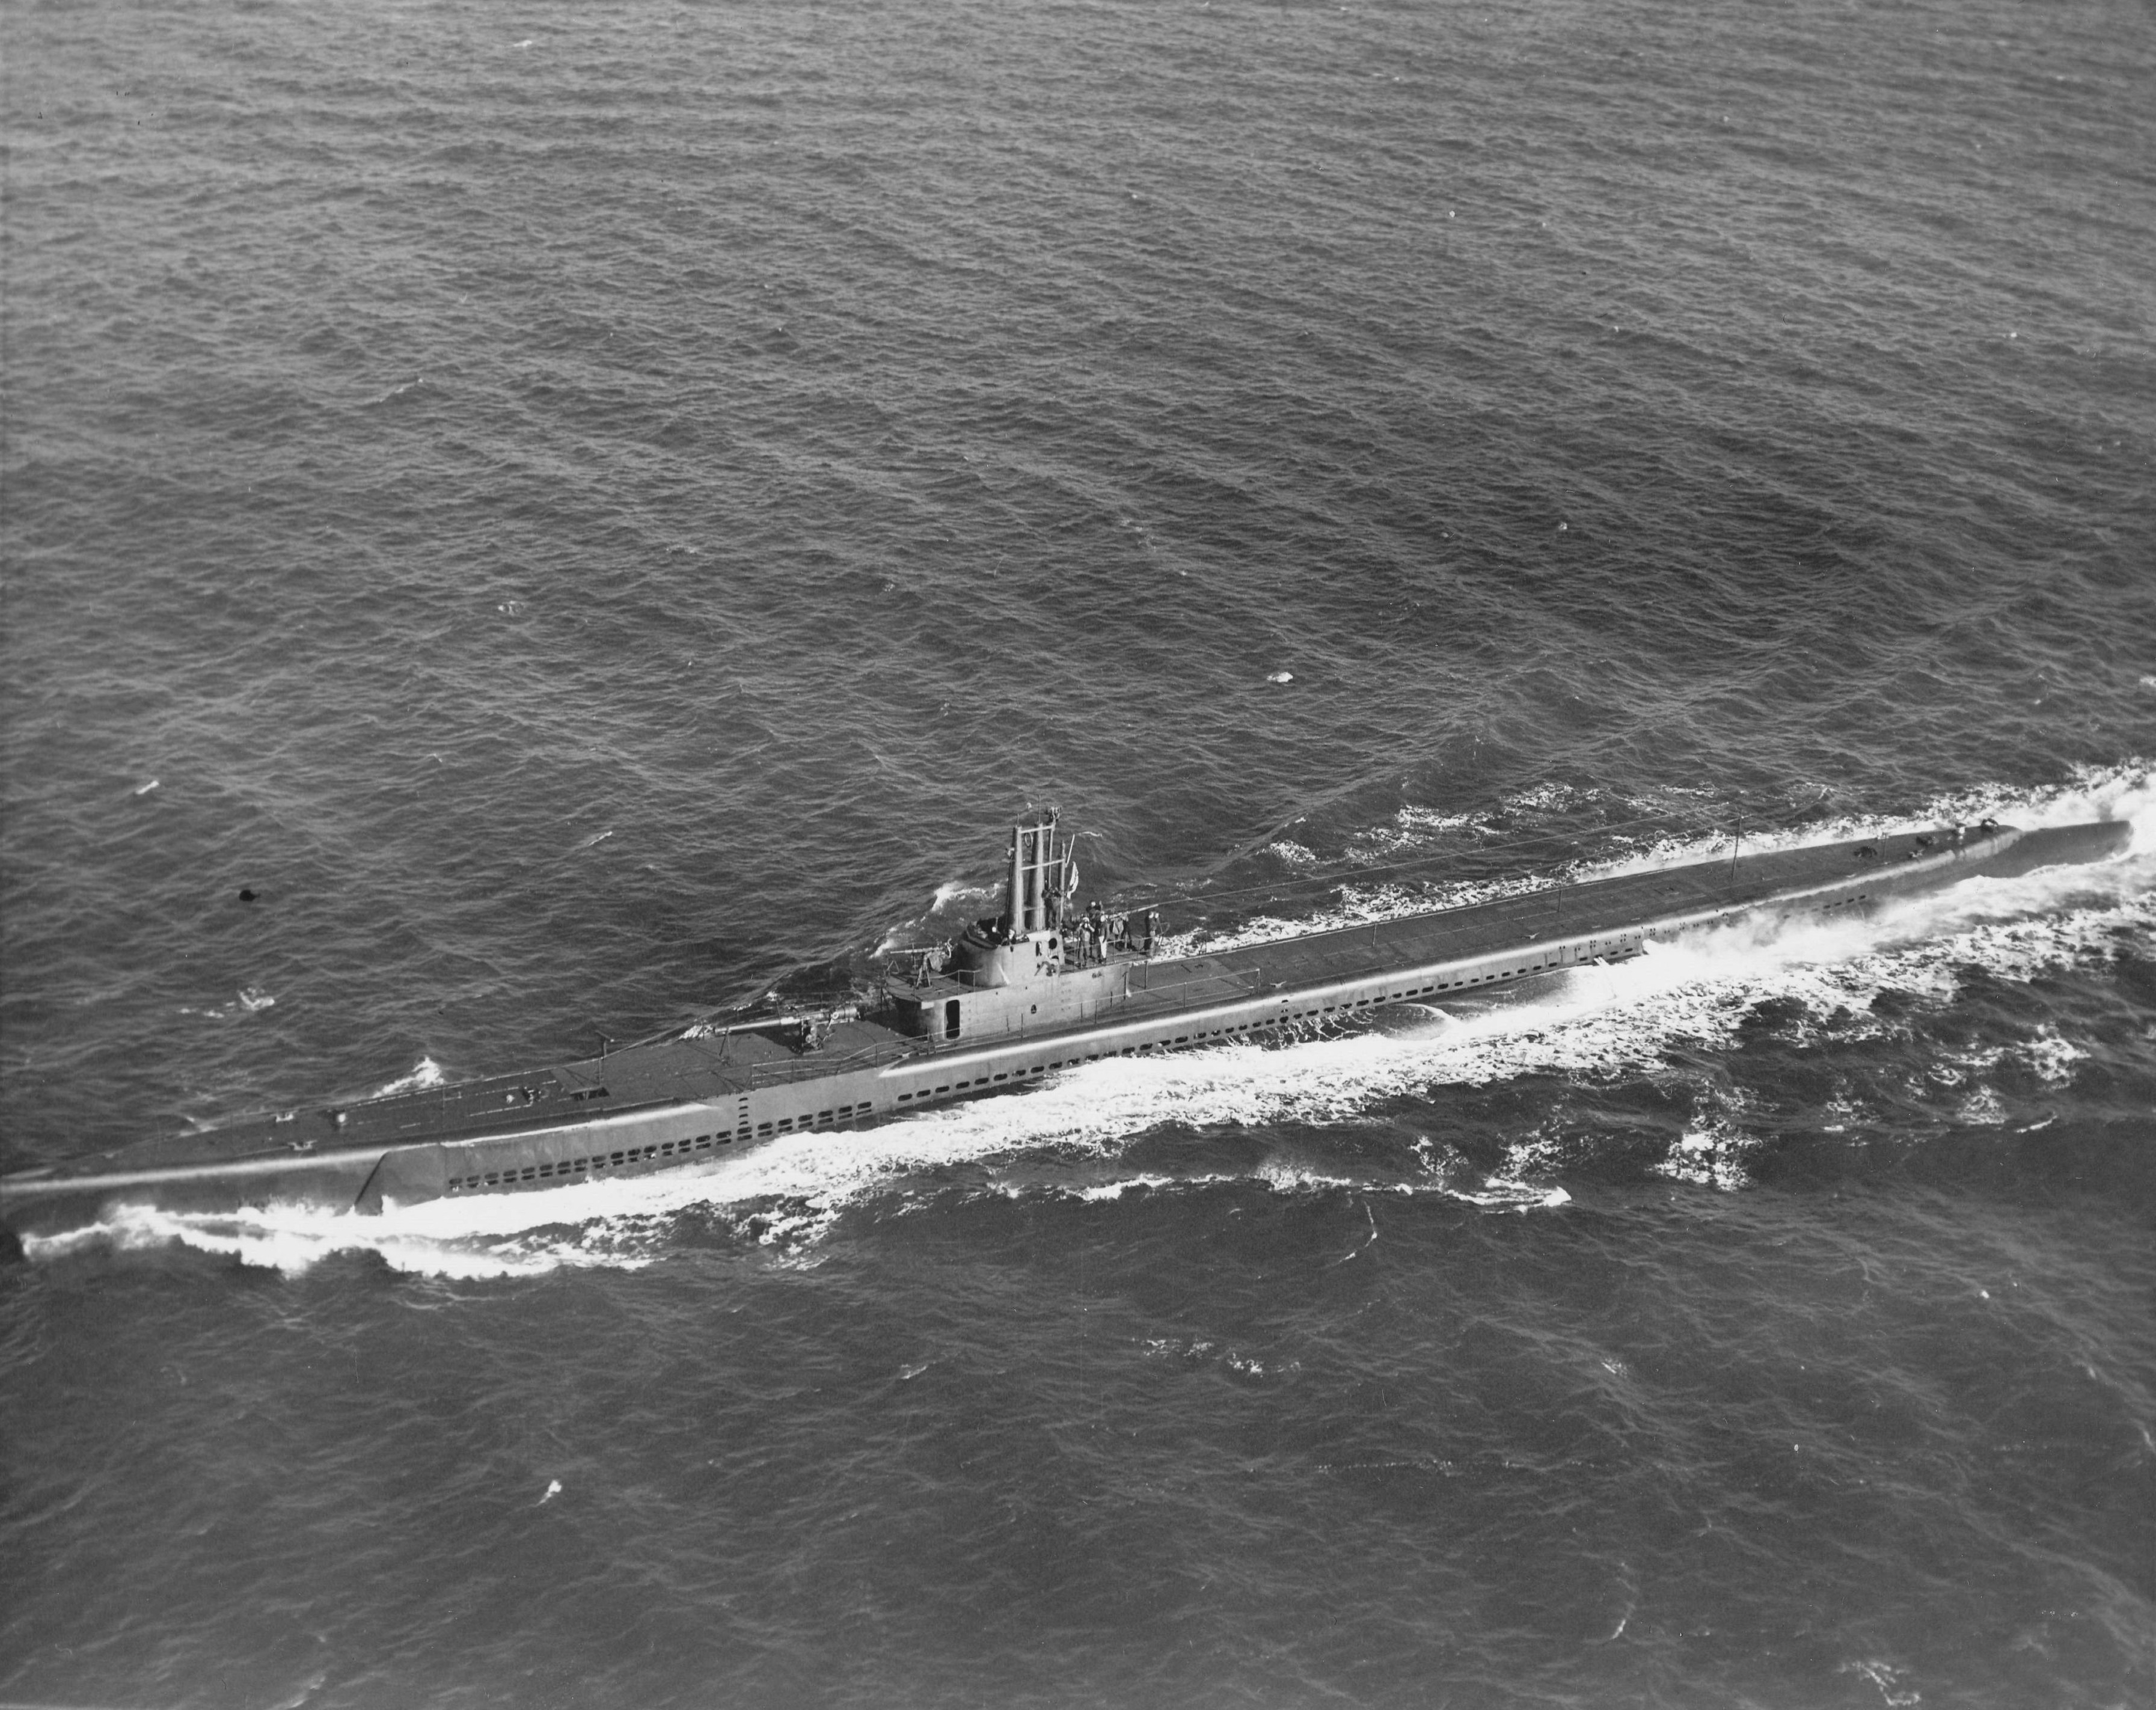 Submarine Parche underway, 4 Nov 1943